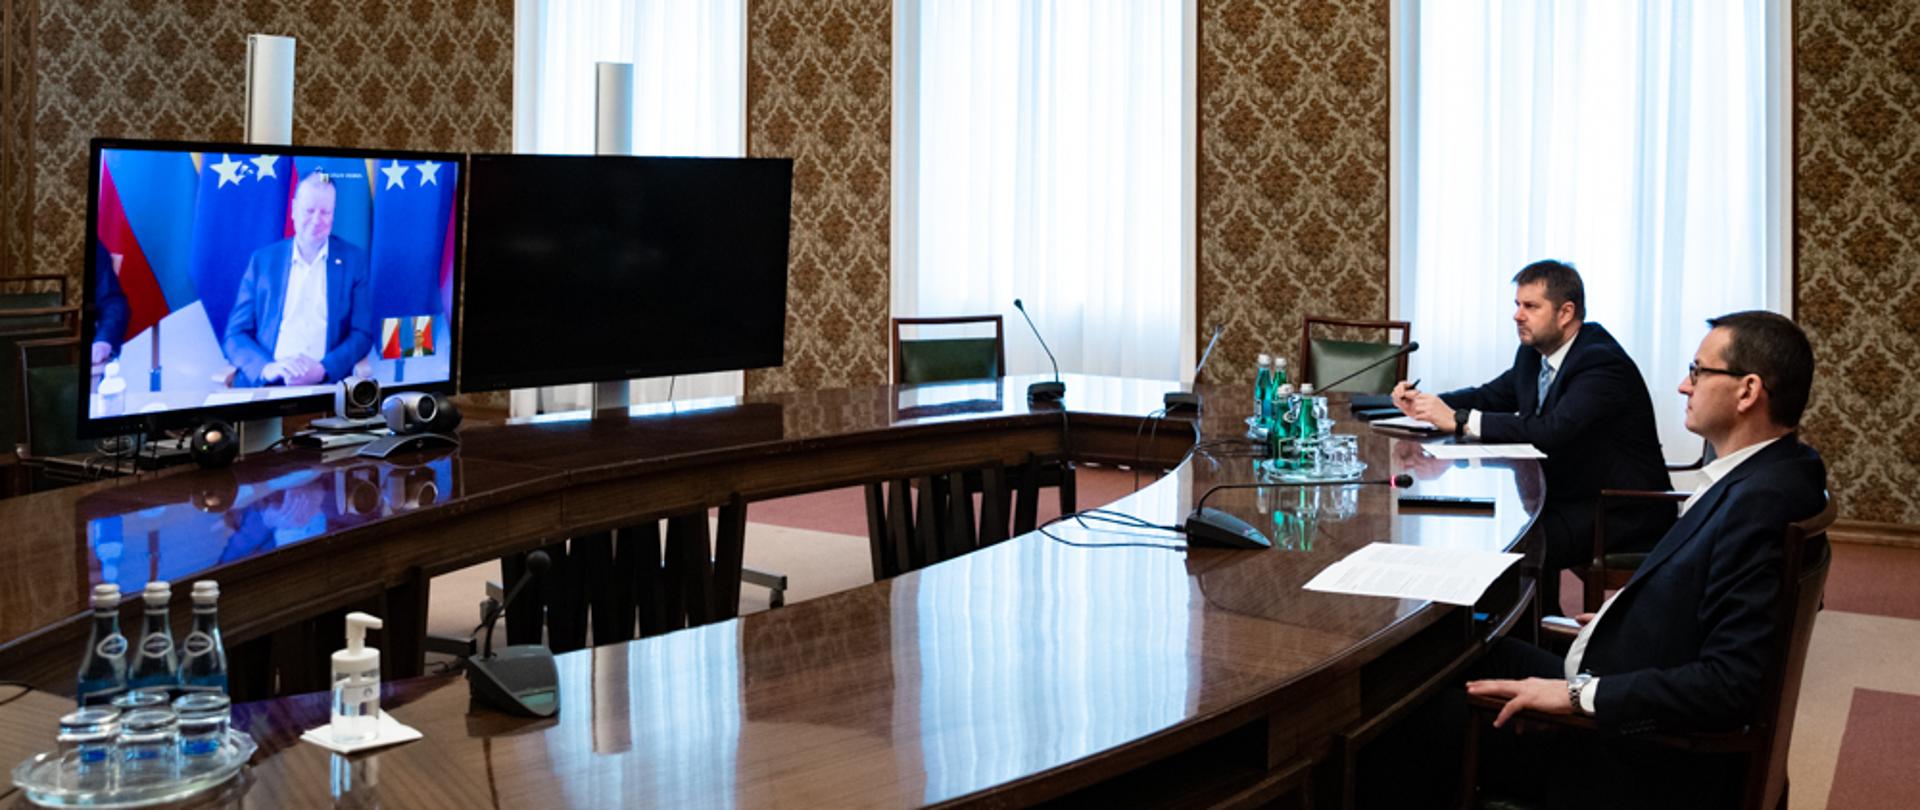 Premier Mateusz Morawiecki siedzi podczas wideokonferencji.